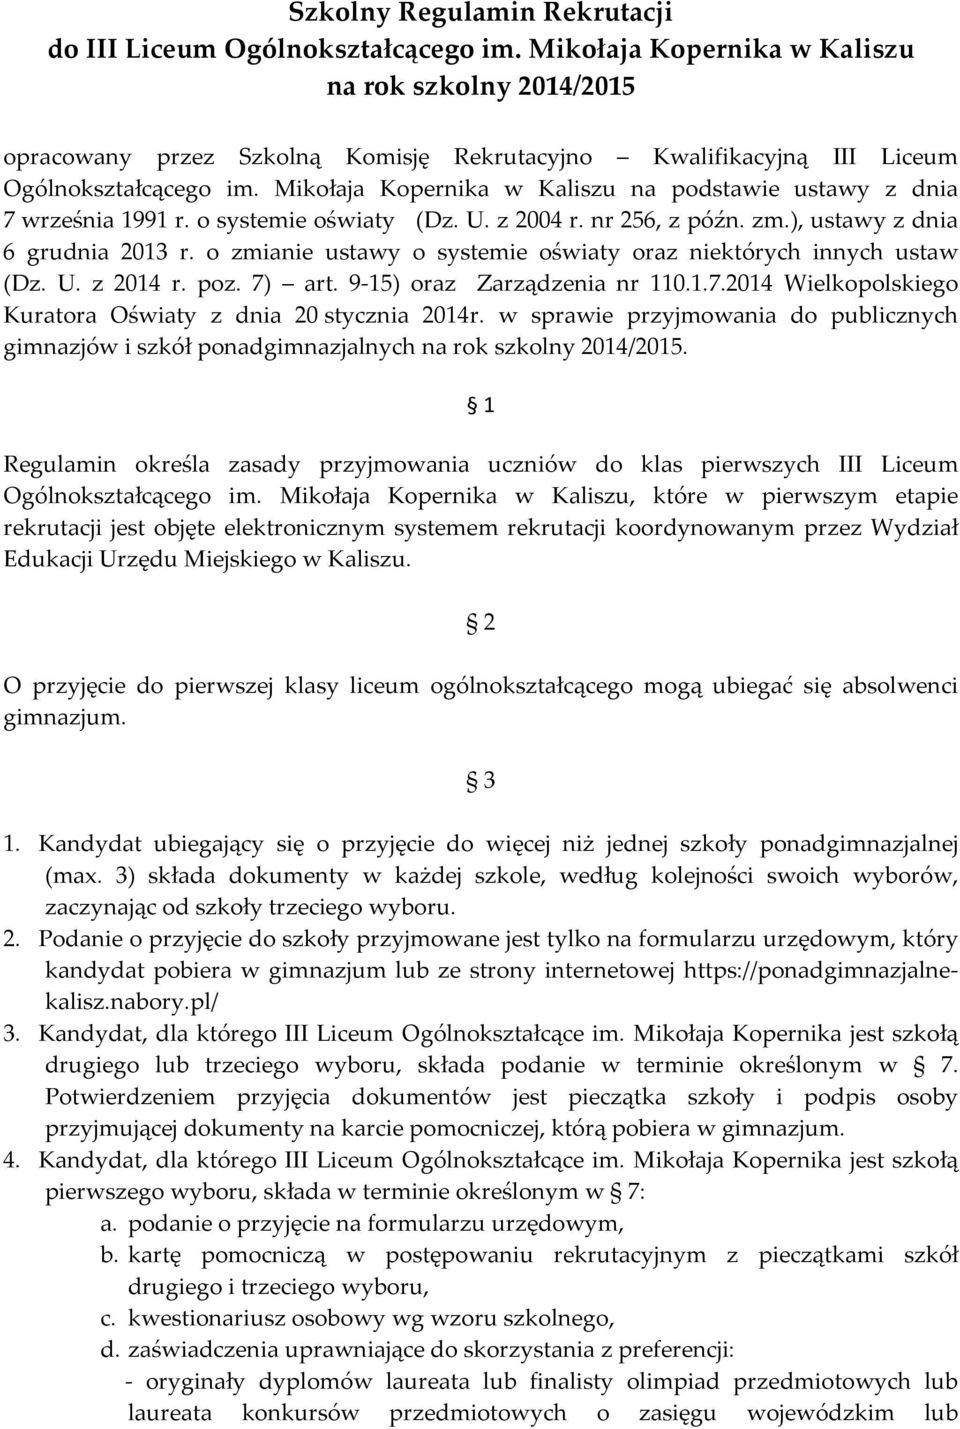 Mikołaja Kopernika w Kaliszu na podstawie ustawy z dnia 7 września 1991 r. o systemie oświaty (Dz. U. z 2004 r. nr 256, z późn. zm.), ustawy z dnia 6 grudnia 2013 r.